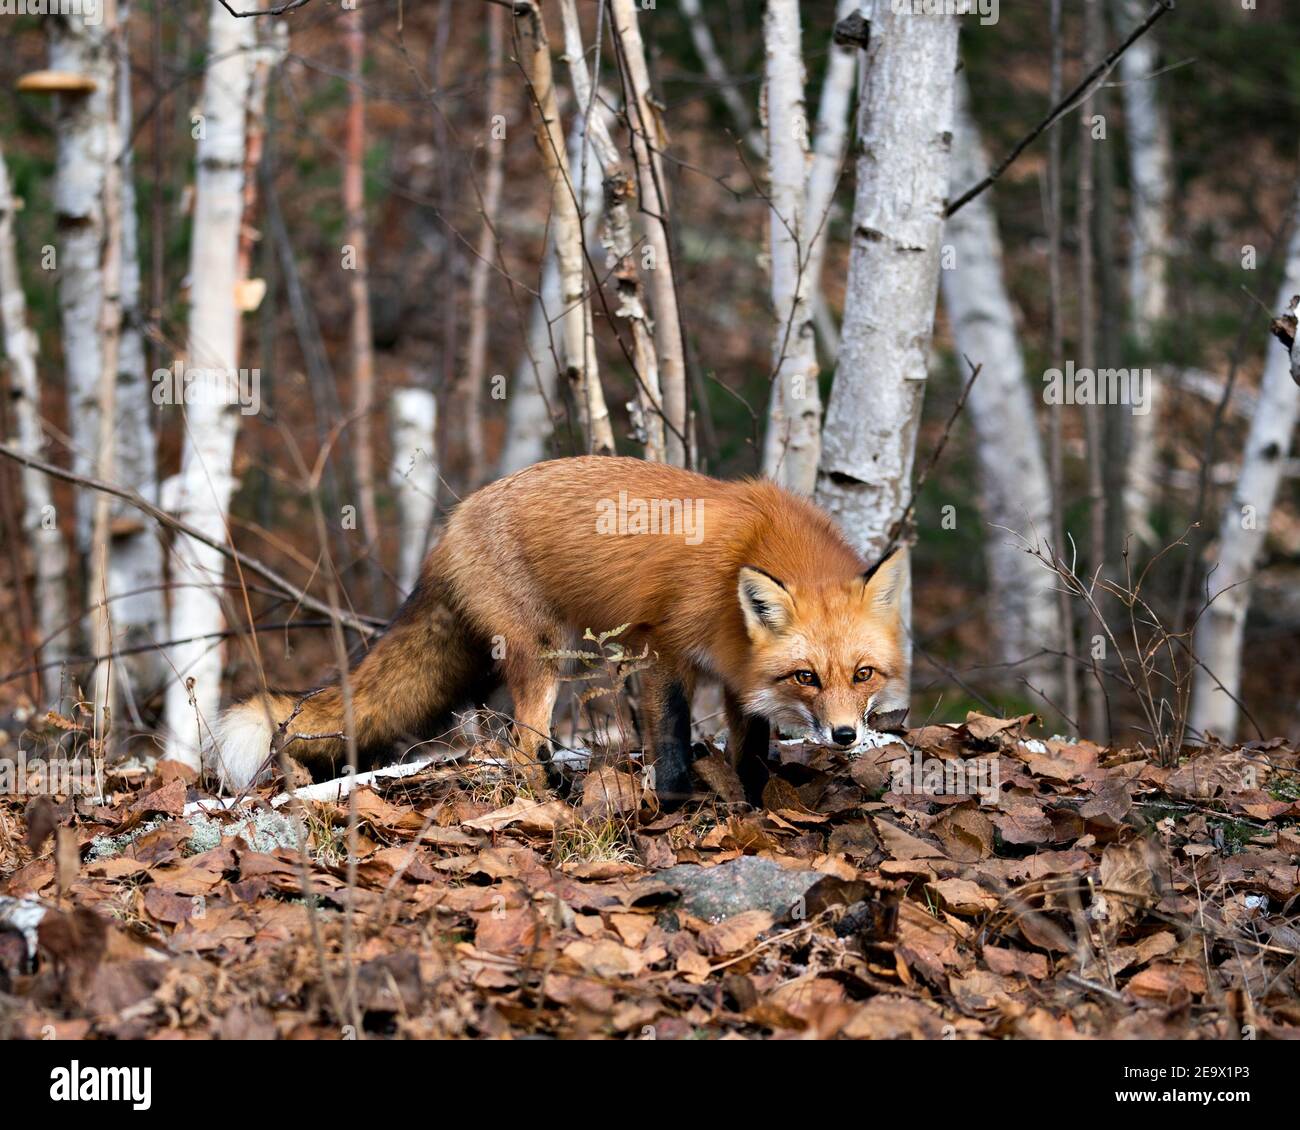 Red Fox guardando la macchina fotografica con sfondo foresta di alberi di betulla nel suo ambiente e habitat, mostrando coda di volpe, pelliccia di volpe. Immagine FOX. Immagine. Verticale Foto Stock